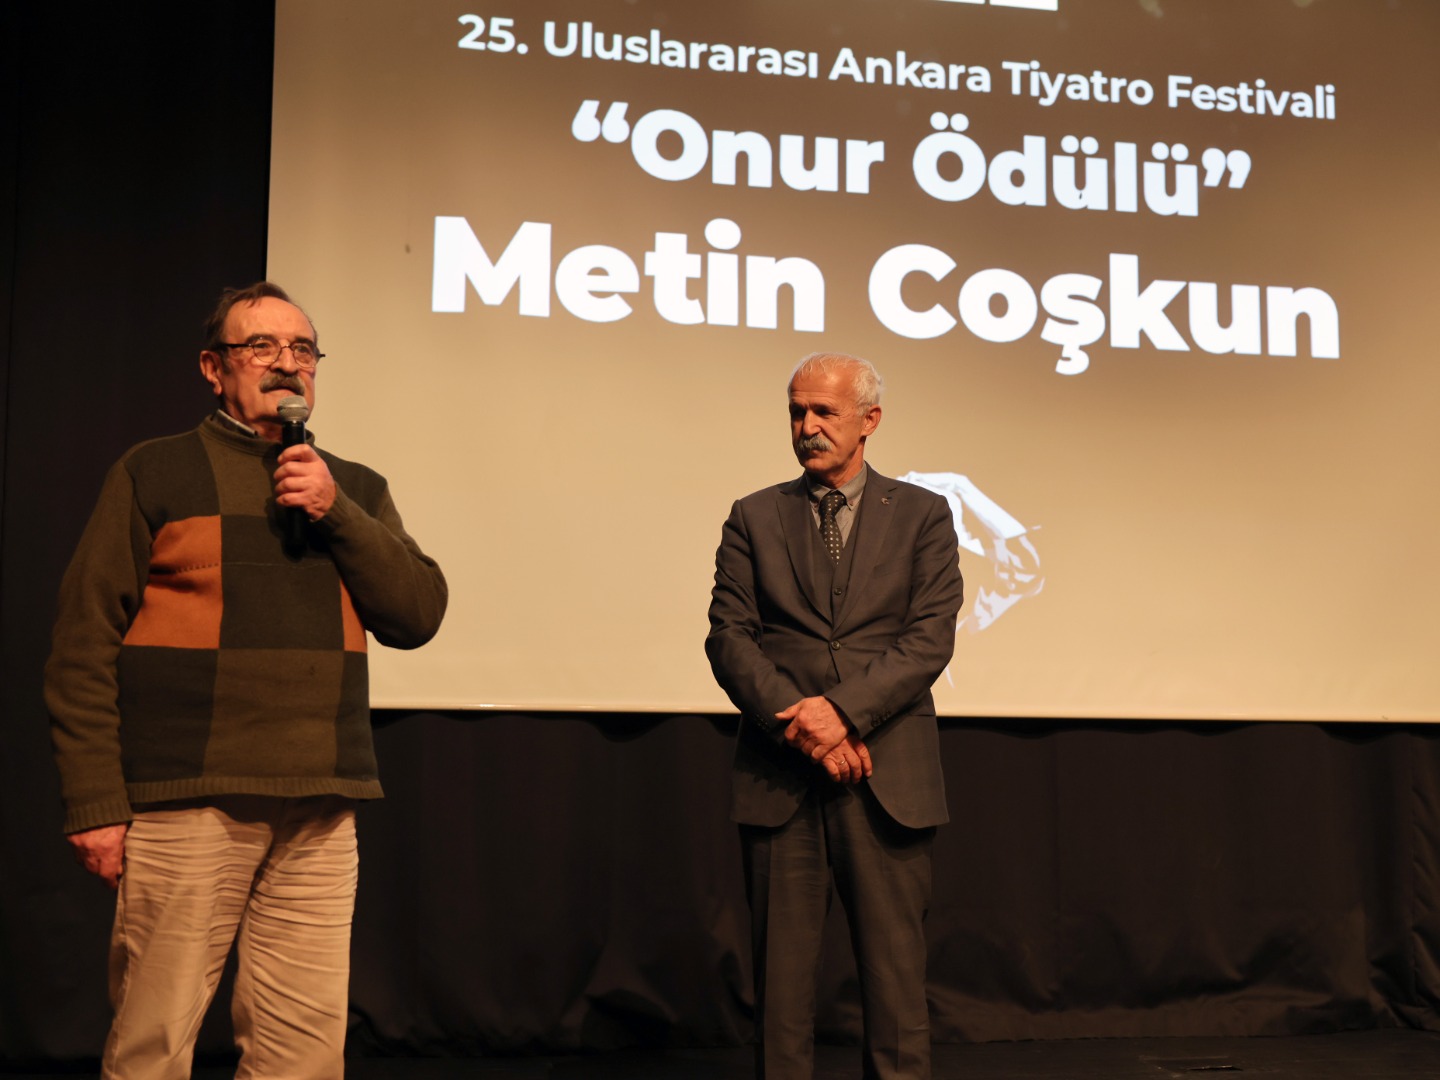 25. Ankara tiyatro festivali "Celile" ile başladı